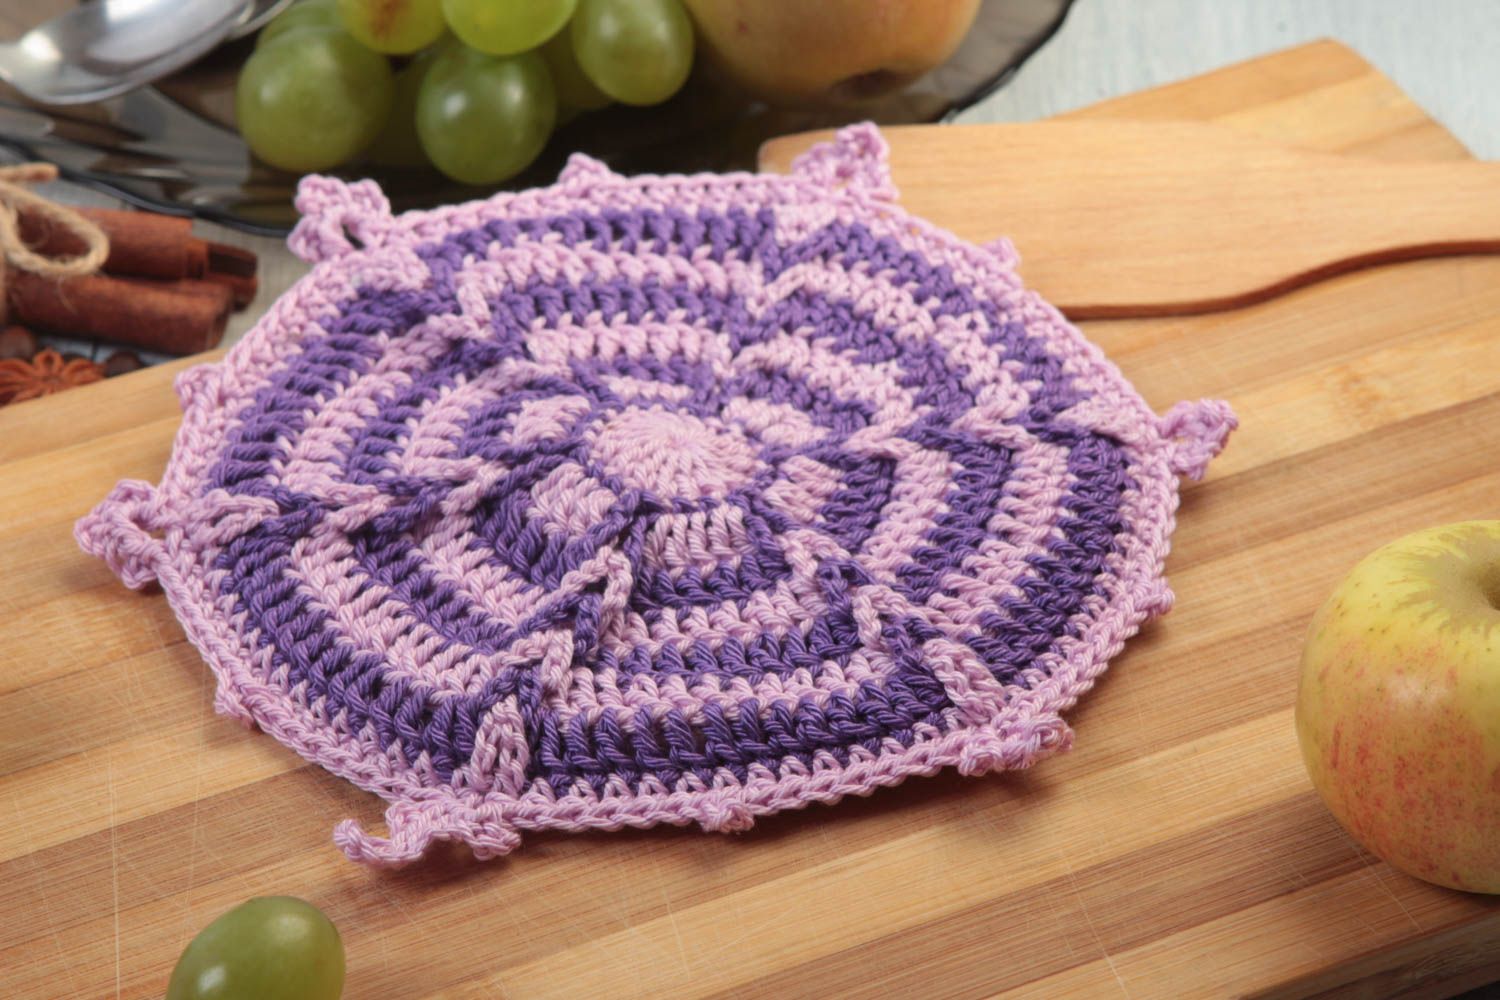 Handmade potholder designer pot holder crochet potholder decorating ideas photo 1